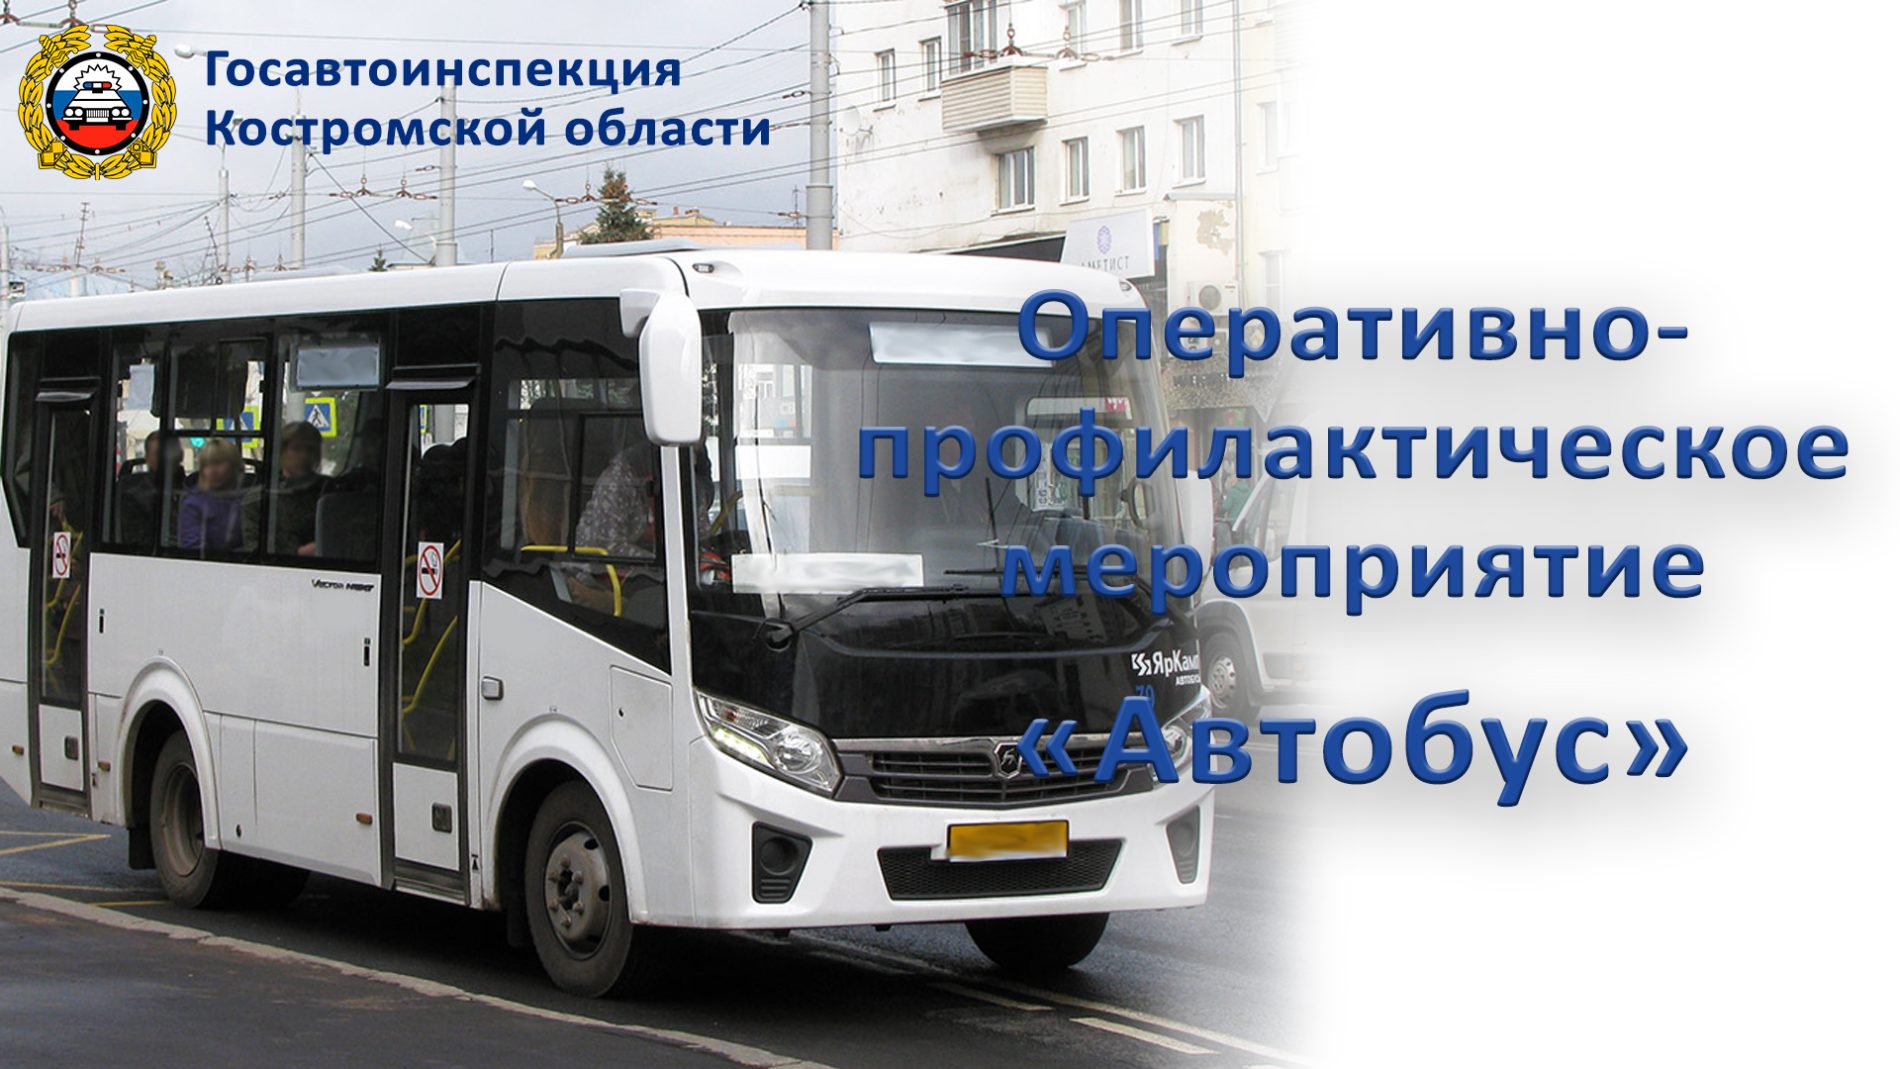 Правоохранители в Костроме запланировали операцию «Автобус»